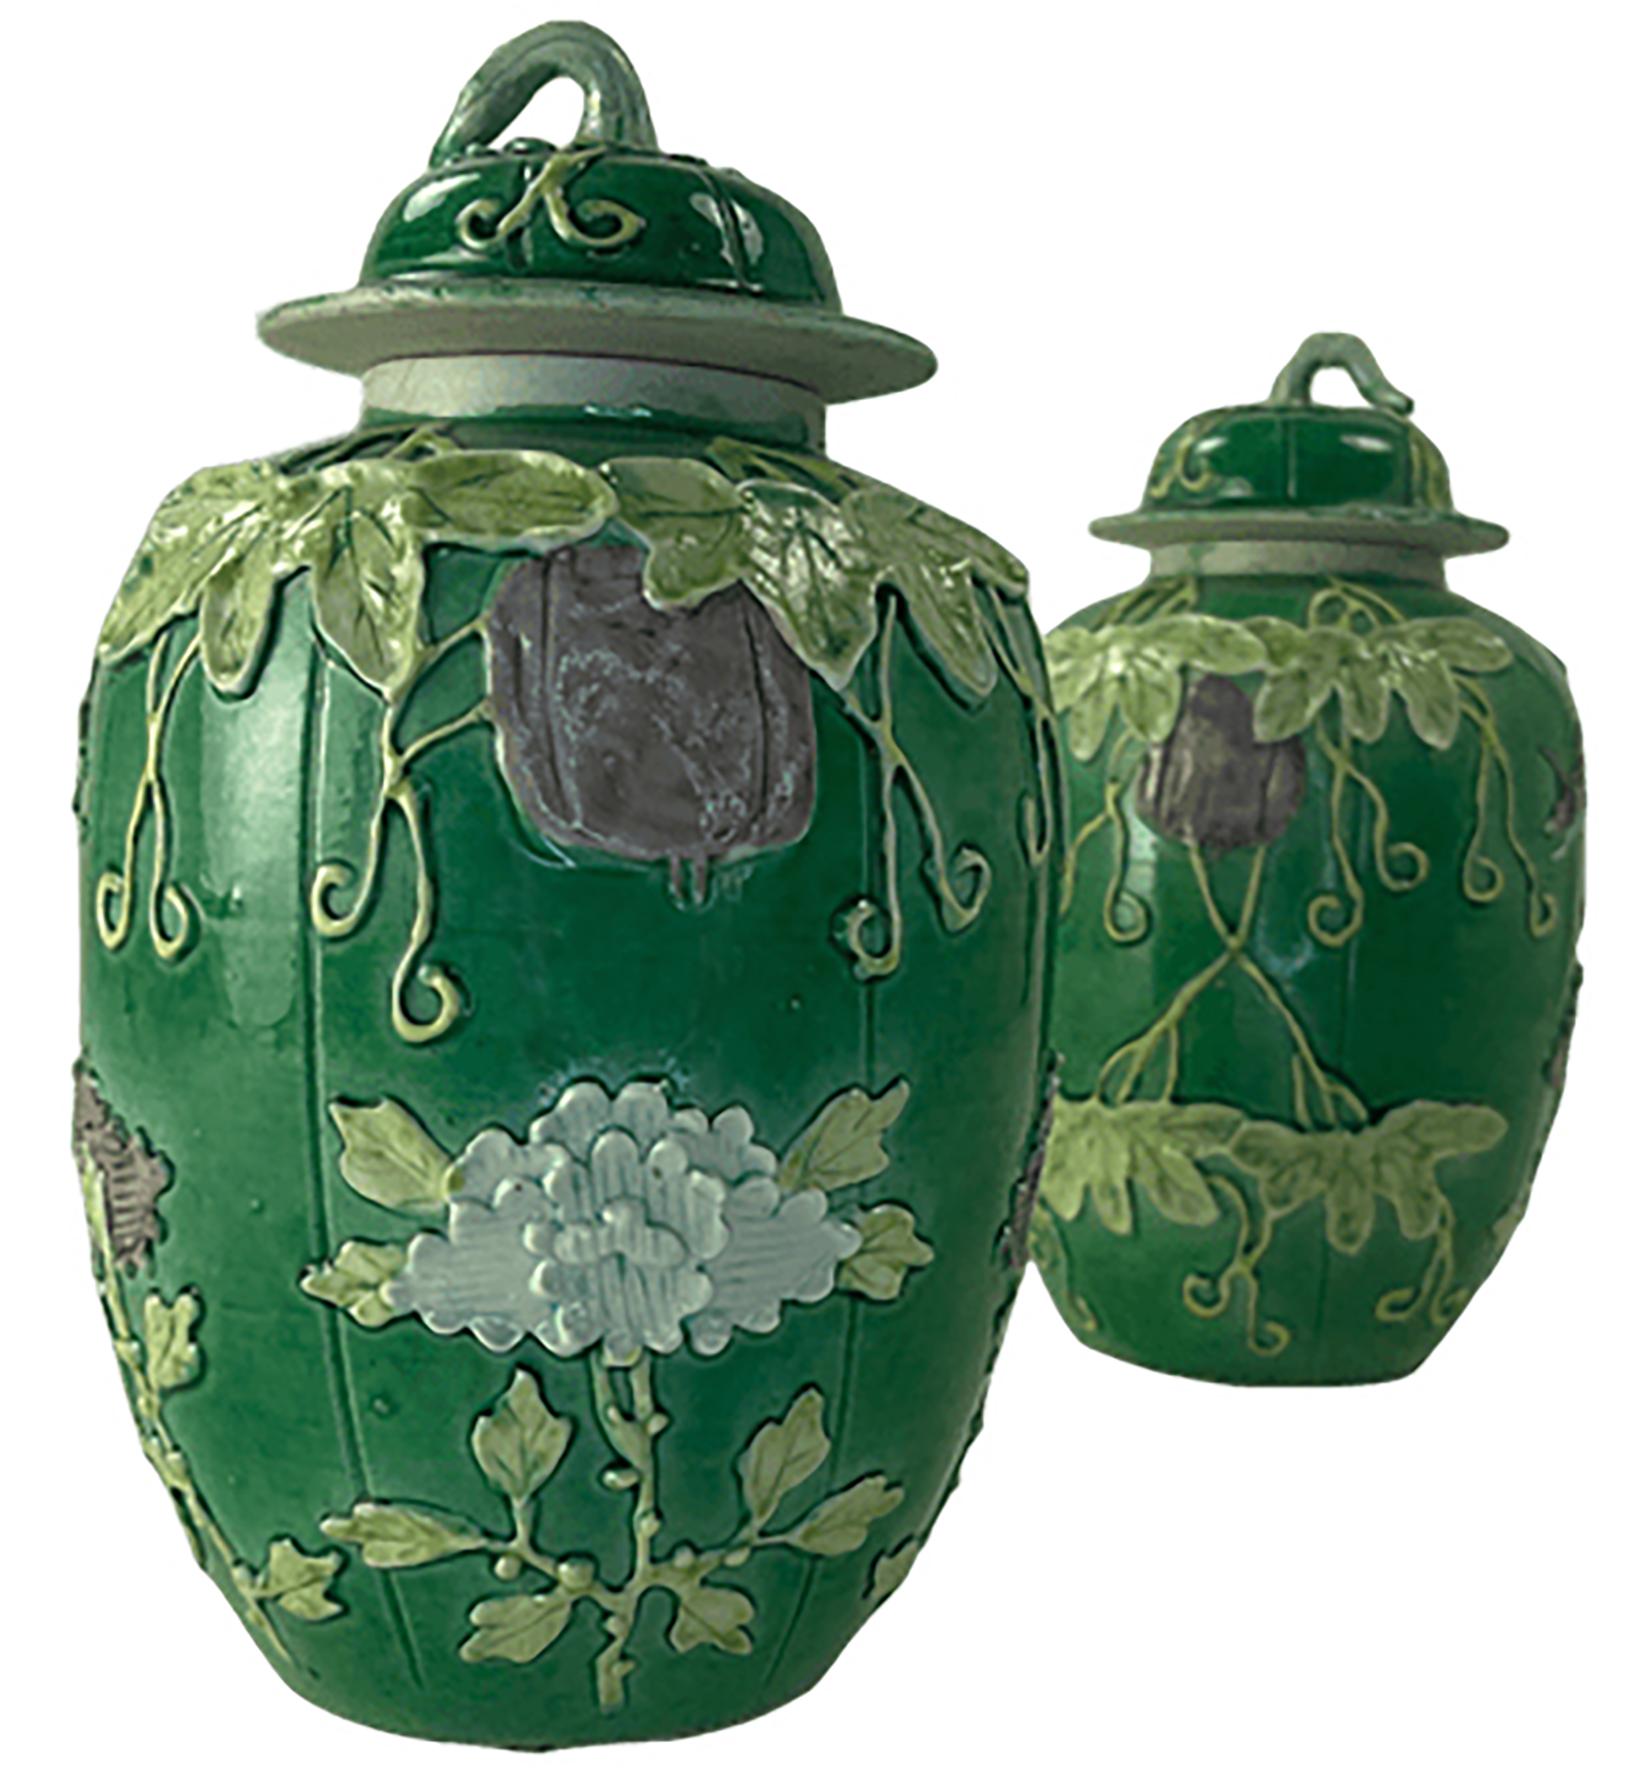 Une paire de jolis pots à gingembre en porcelaine émaillée verte. Le fond n'est pas marqué. Des vignes et du feuillage verts sont sculptés à la main comme éléments dimensionnels sur le côté des jarres, avec quelques fleurs violettes légères